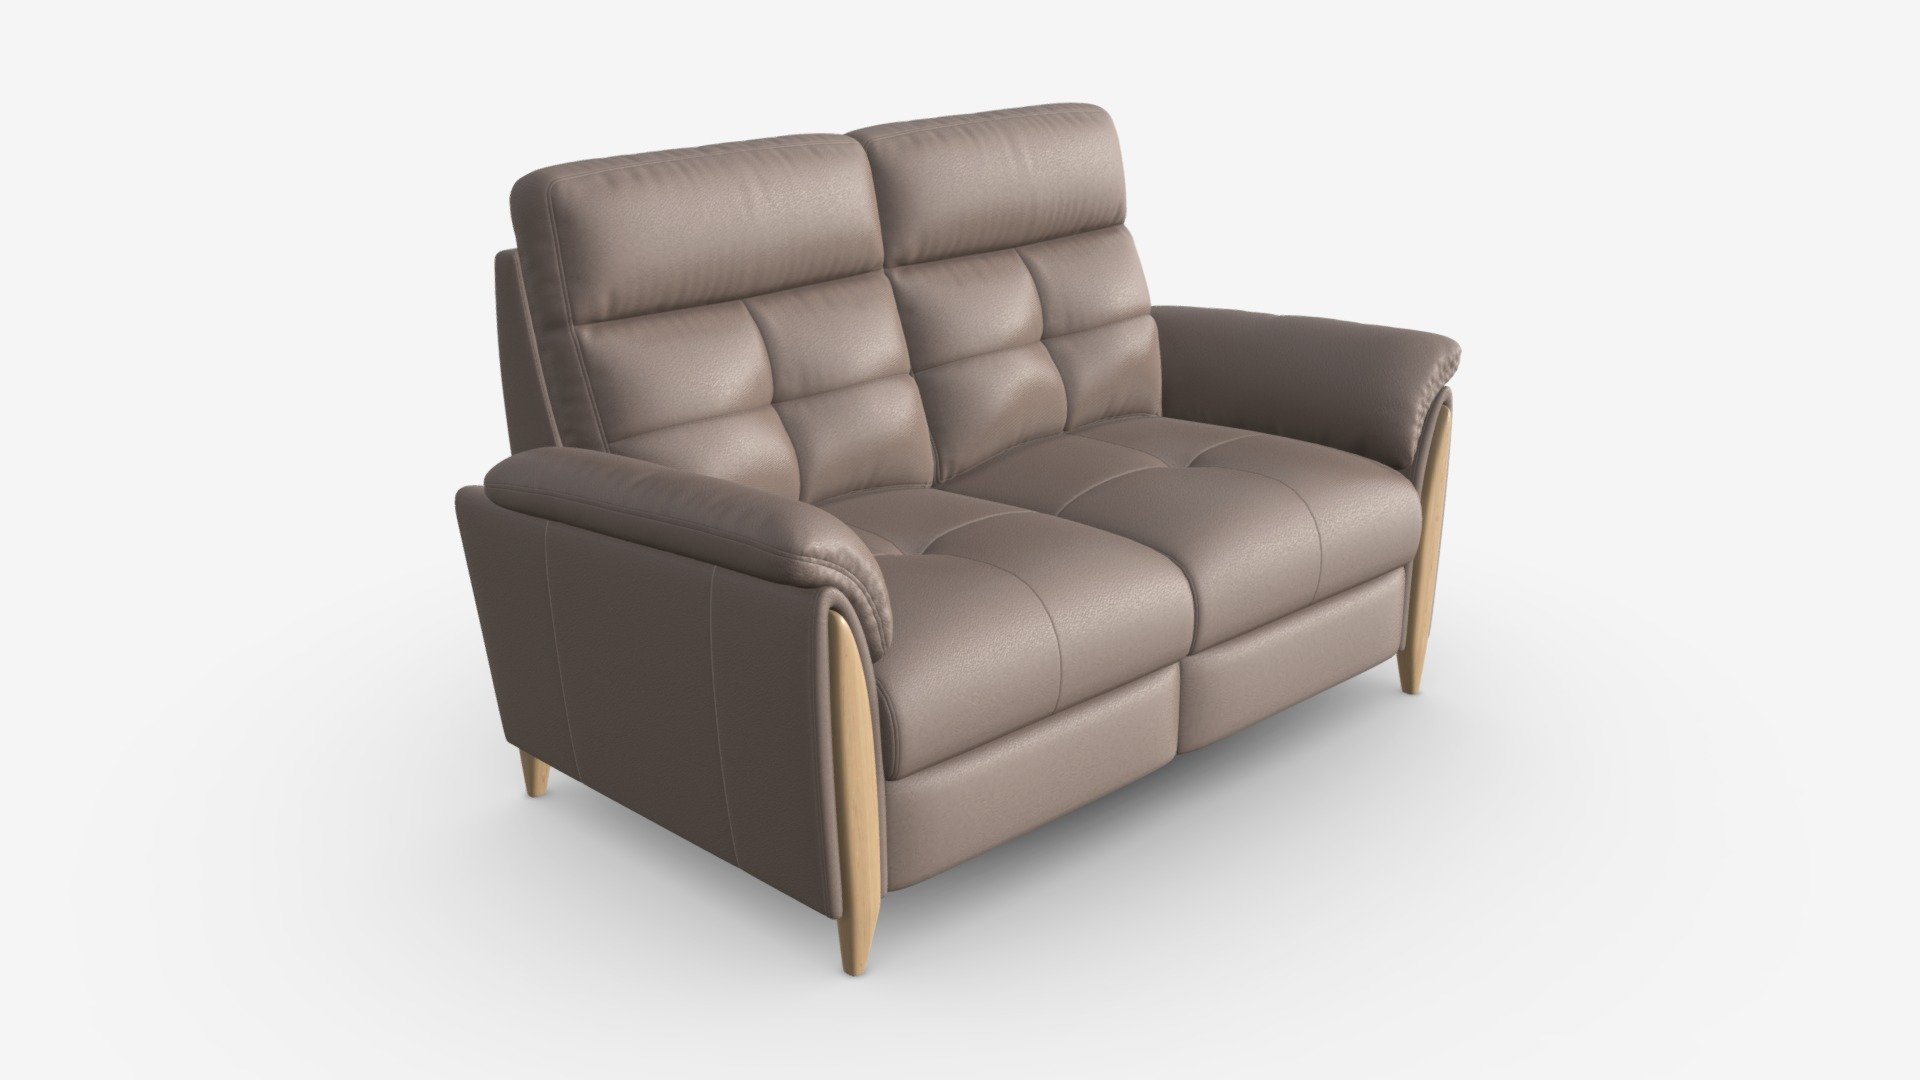 Sofa Medium Recliner Ercol Mondello - Buy Royalty Free 3D model by HQ3DMOD (@AivisAstics) 3d model